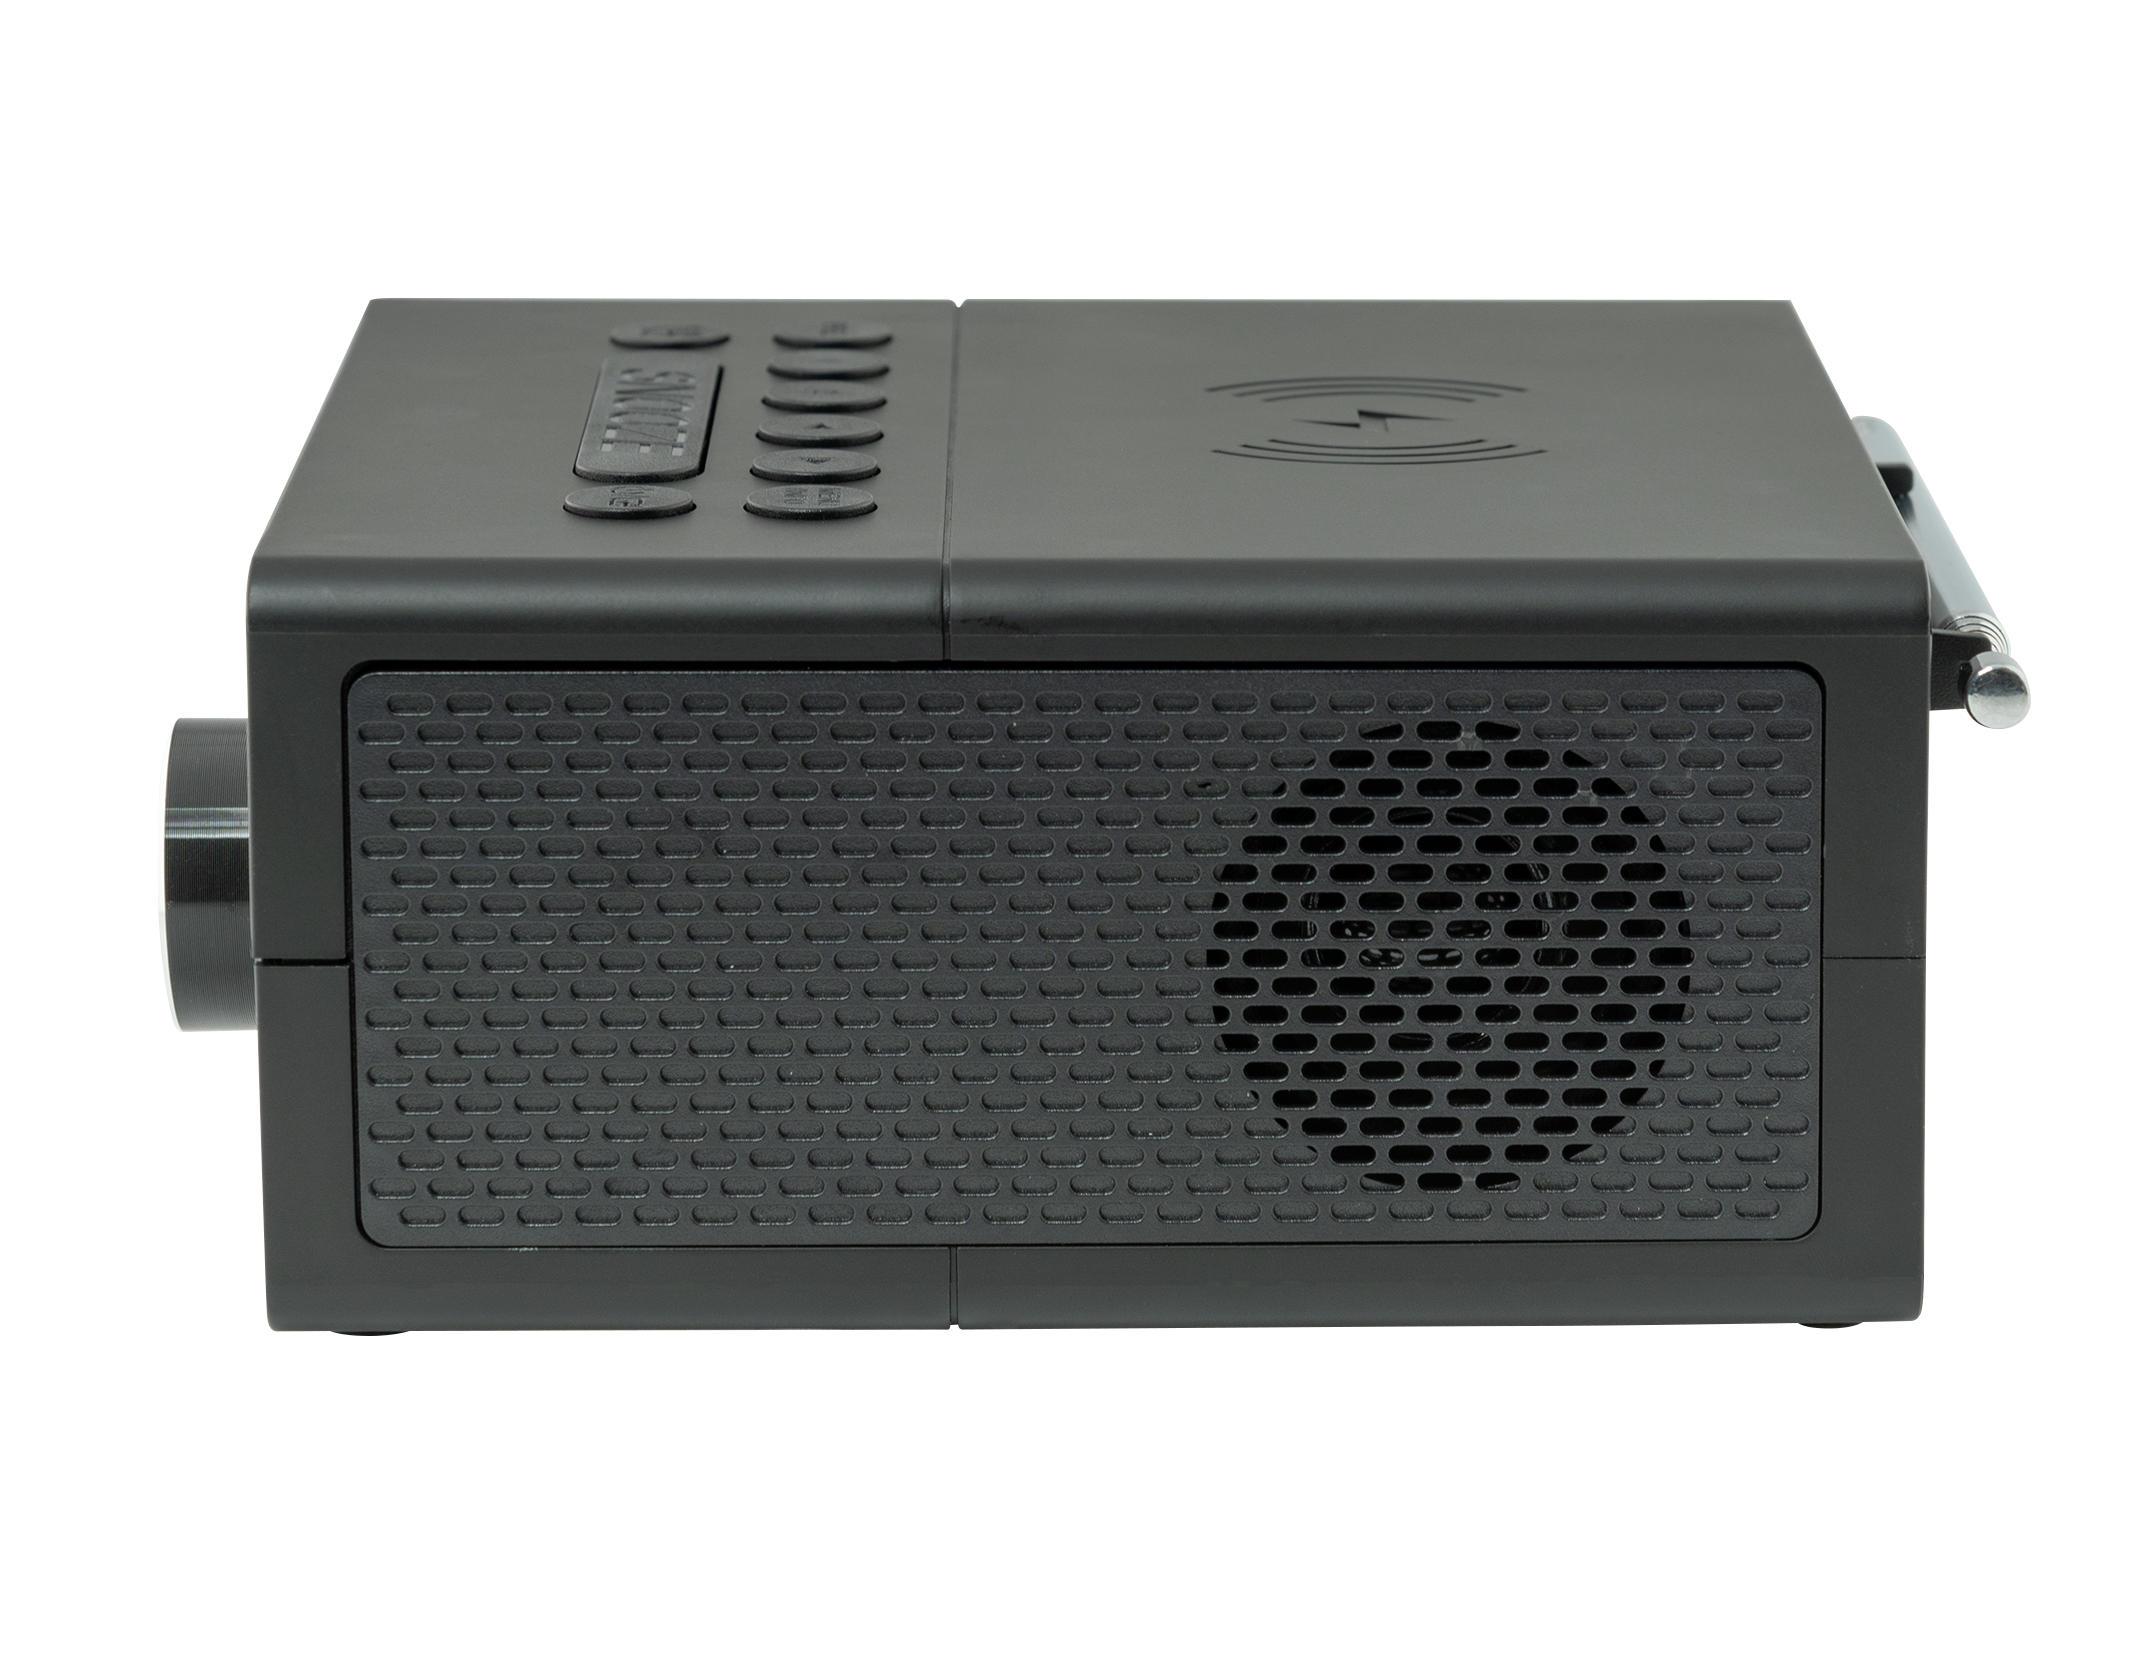 OK. OCR 530-B Radiowecker, Schwarz DAB+, FM, Bluetooth